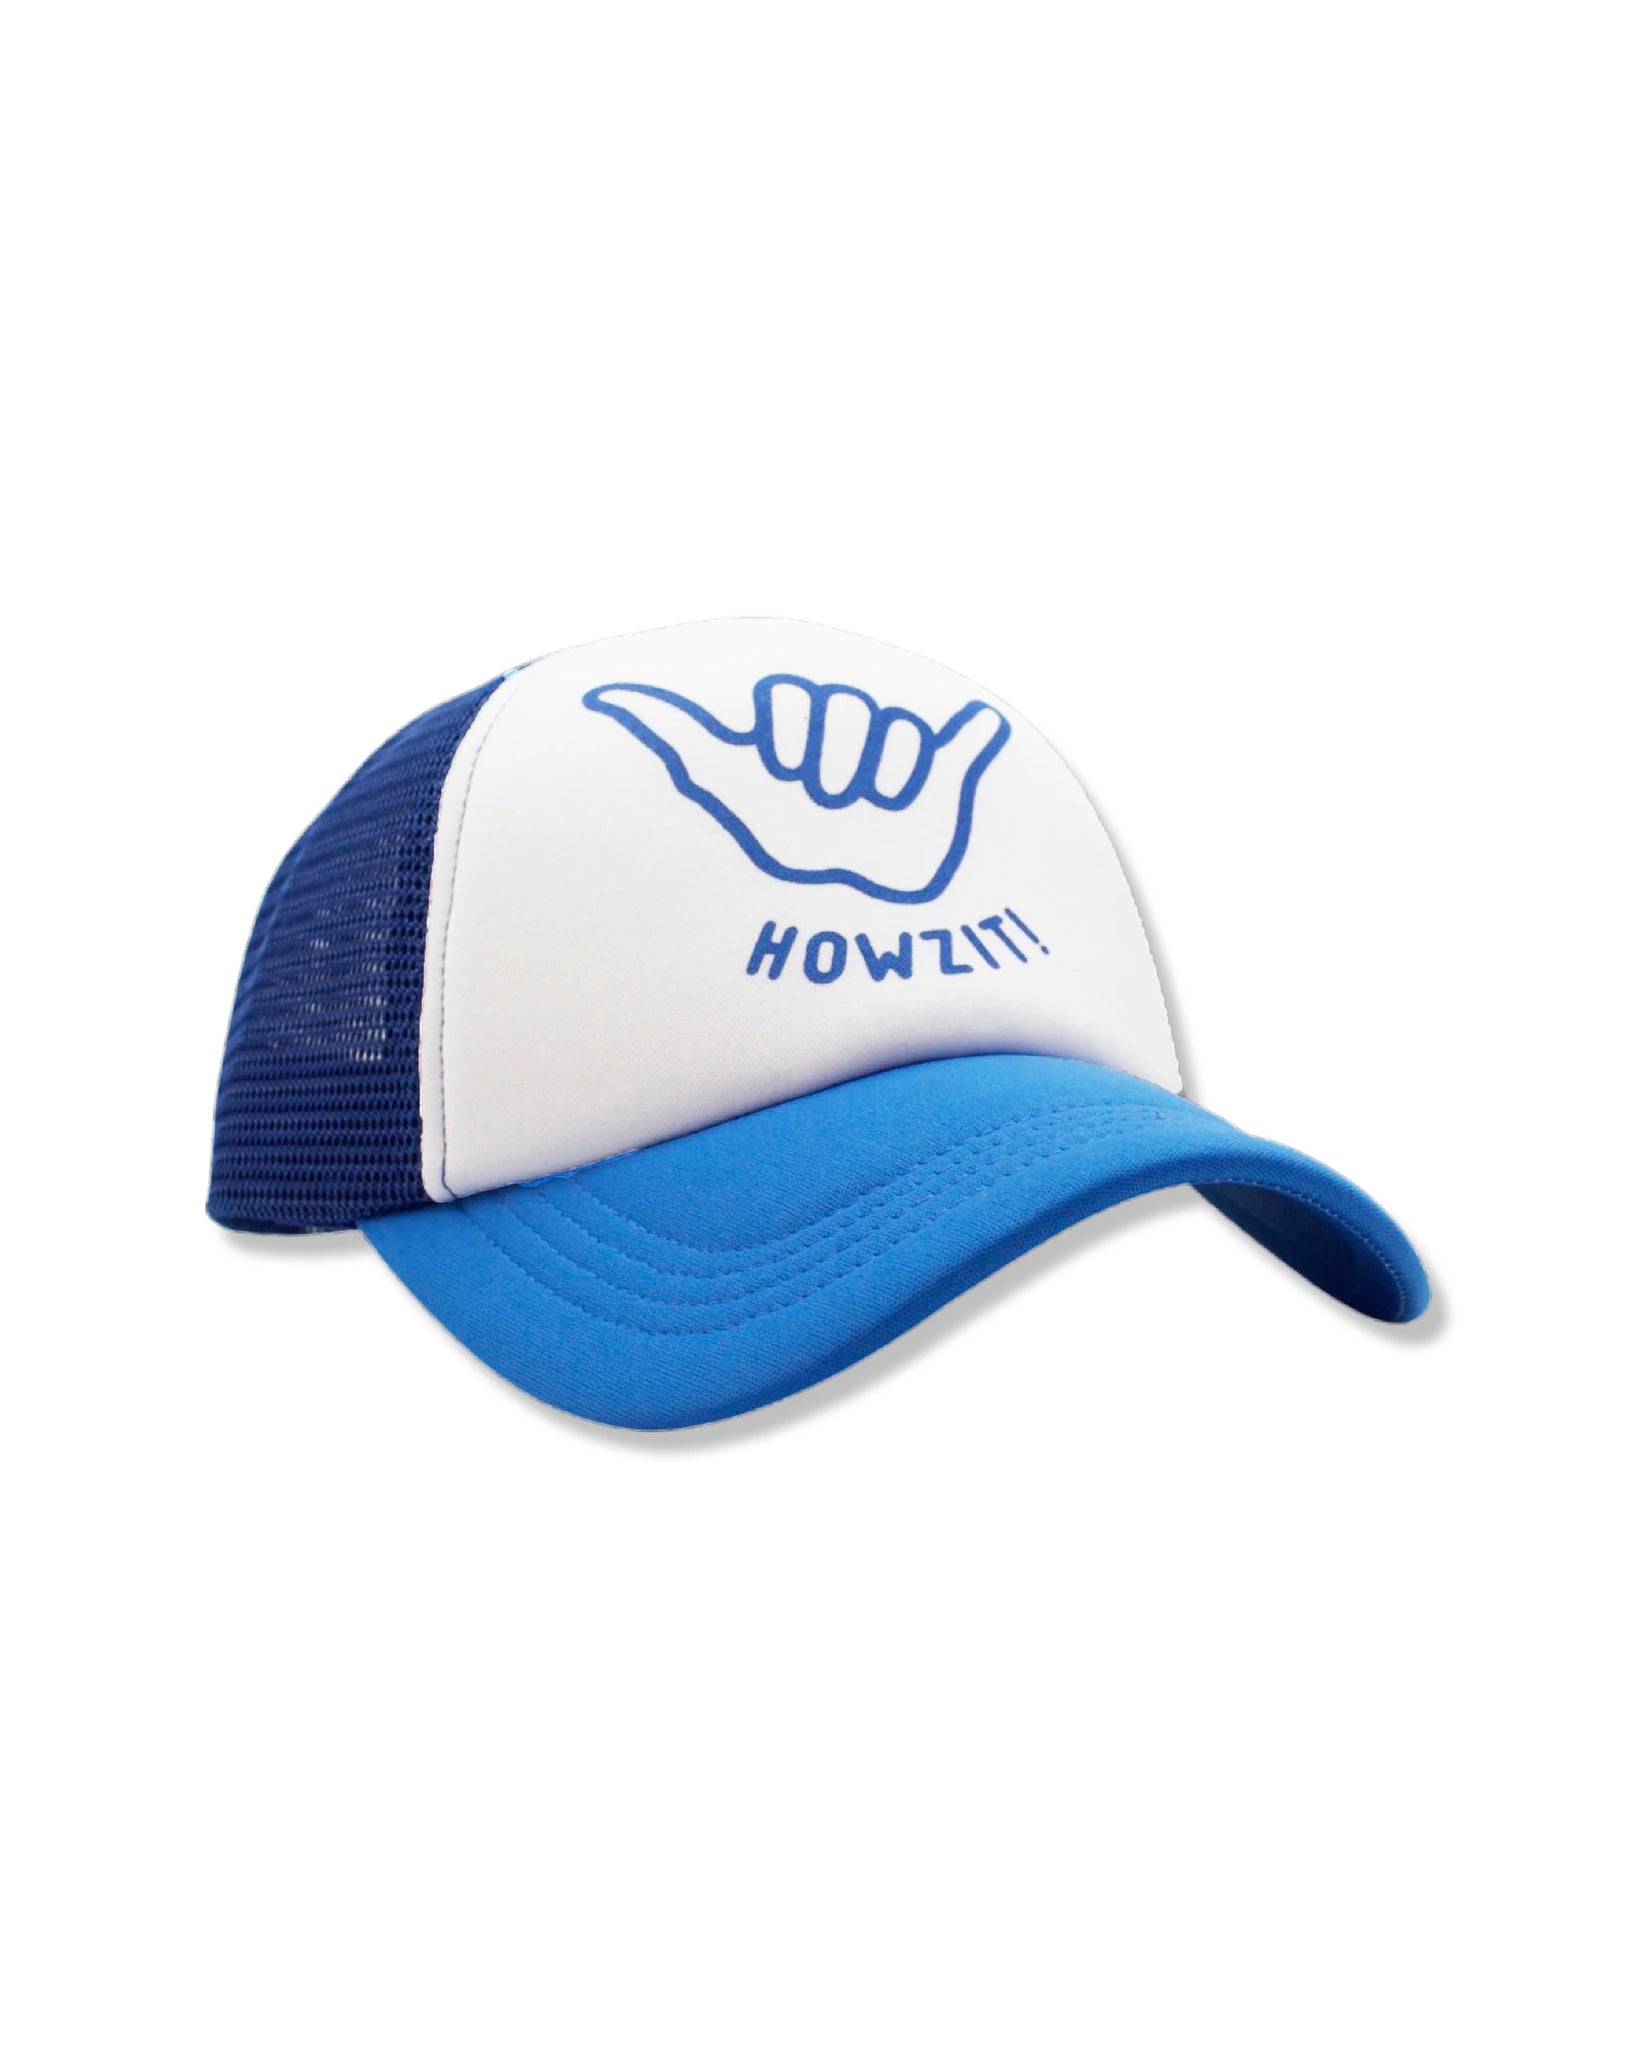 Howzit Trucker Hat - Seaside Blue/White